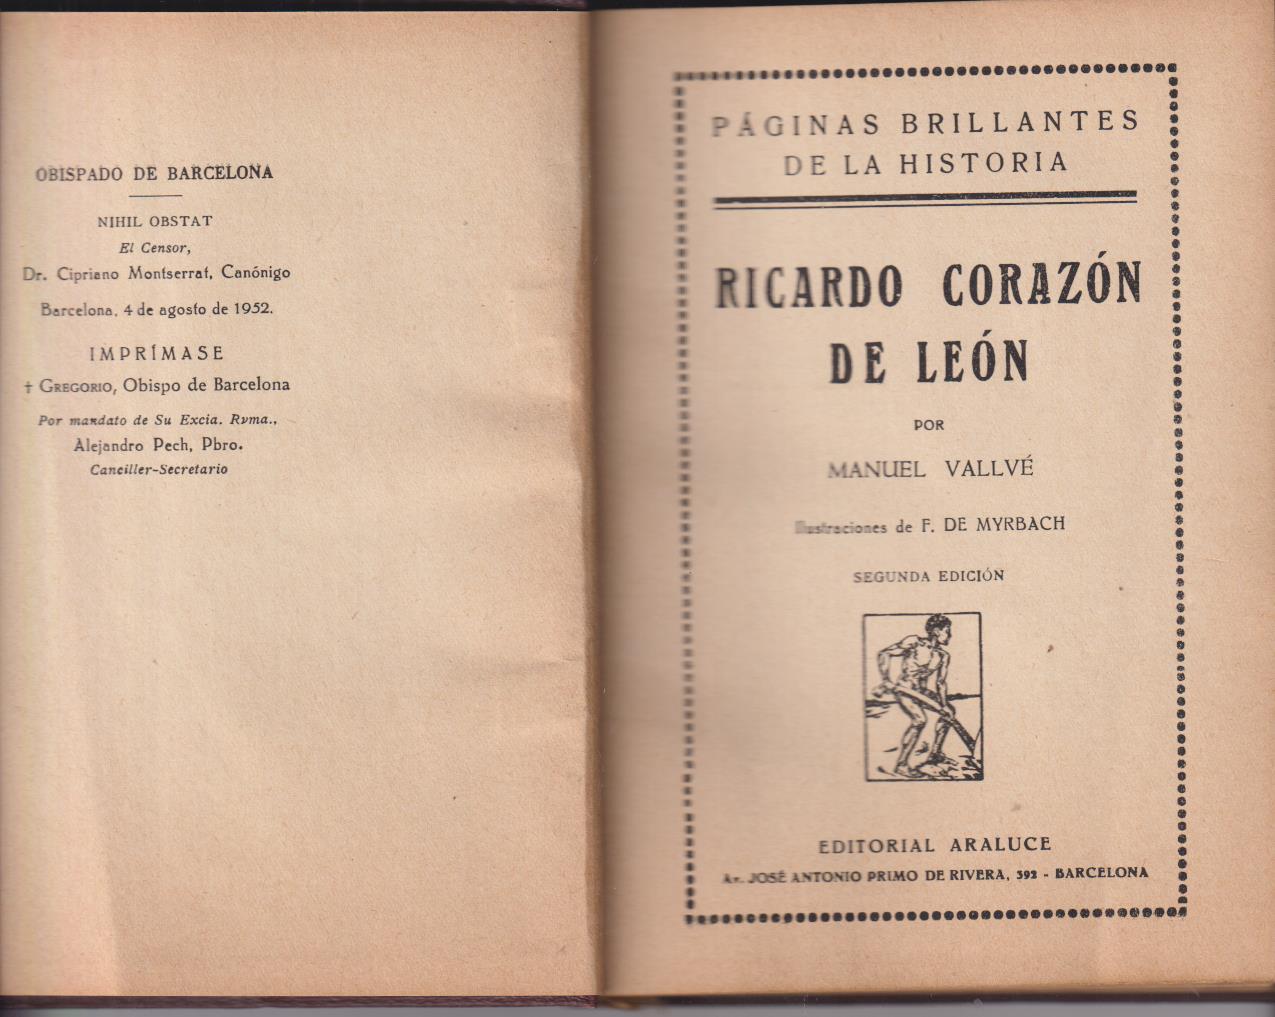 Ricardo Corazón de León. Manuel Vallvé. Editorial Araluce, 1952